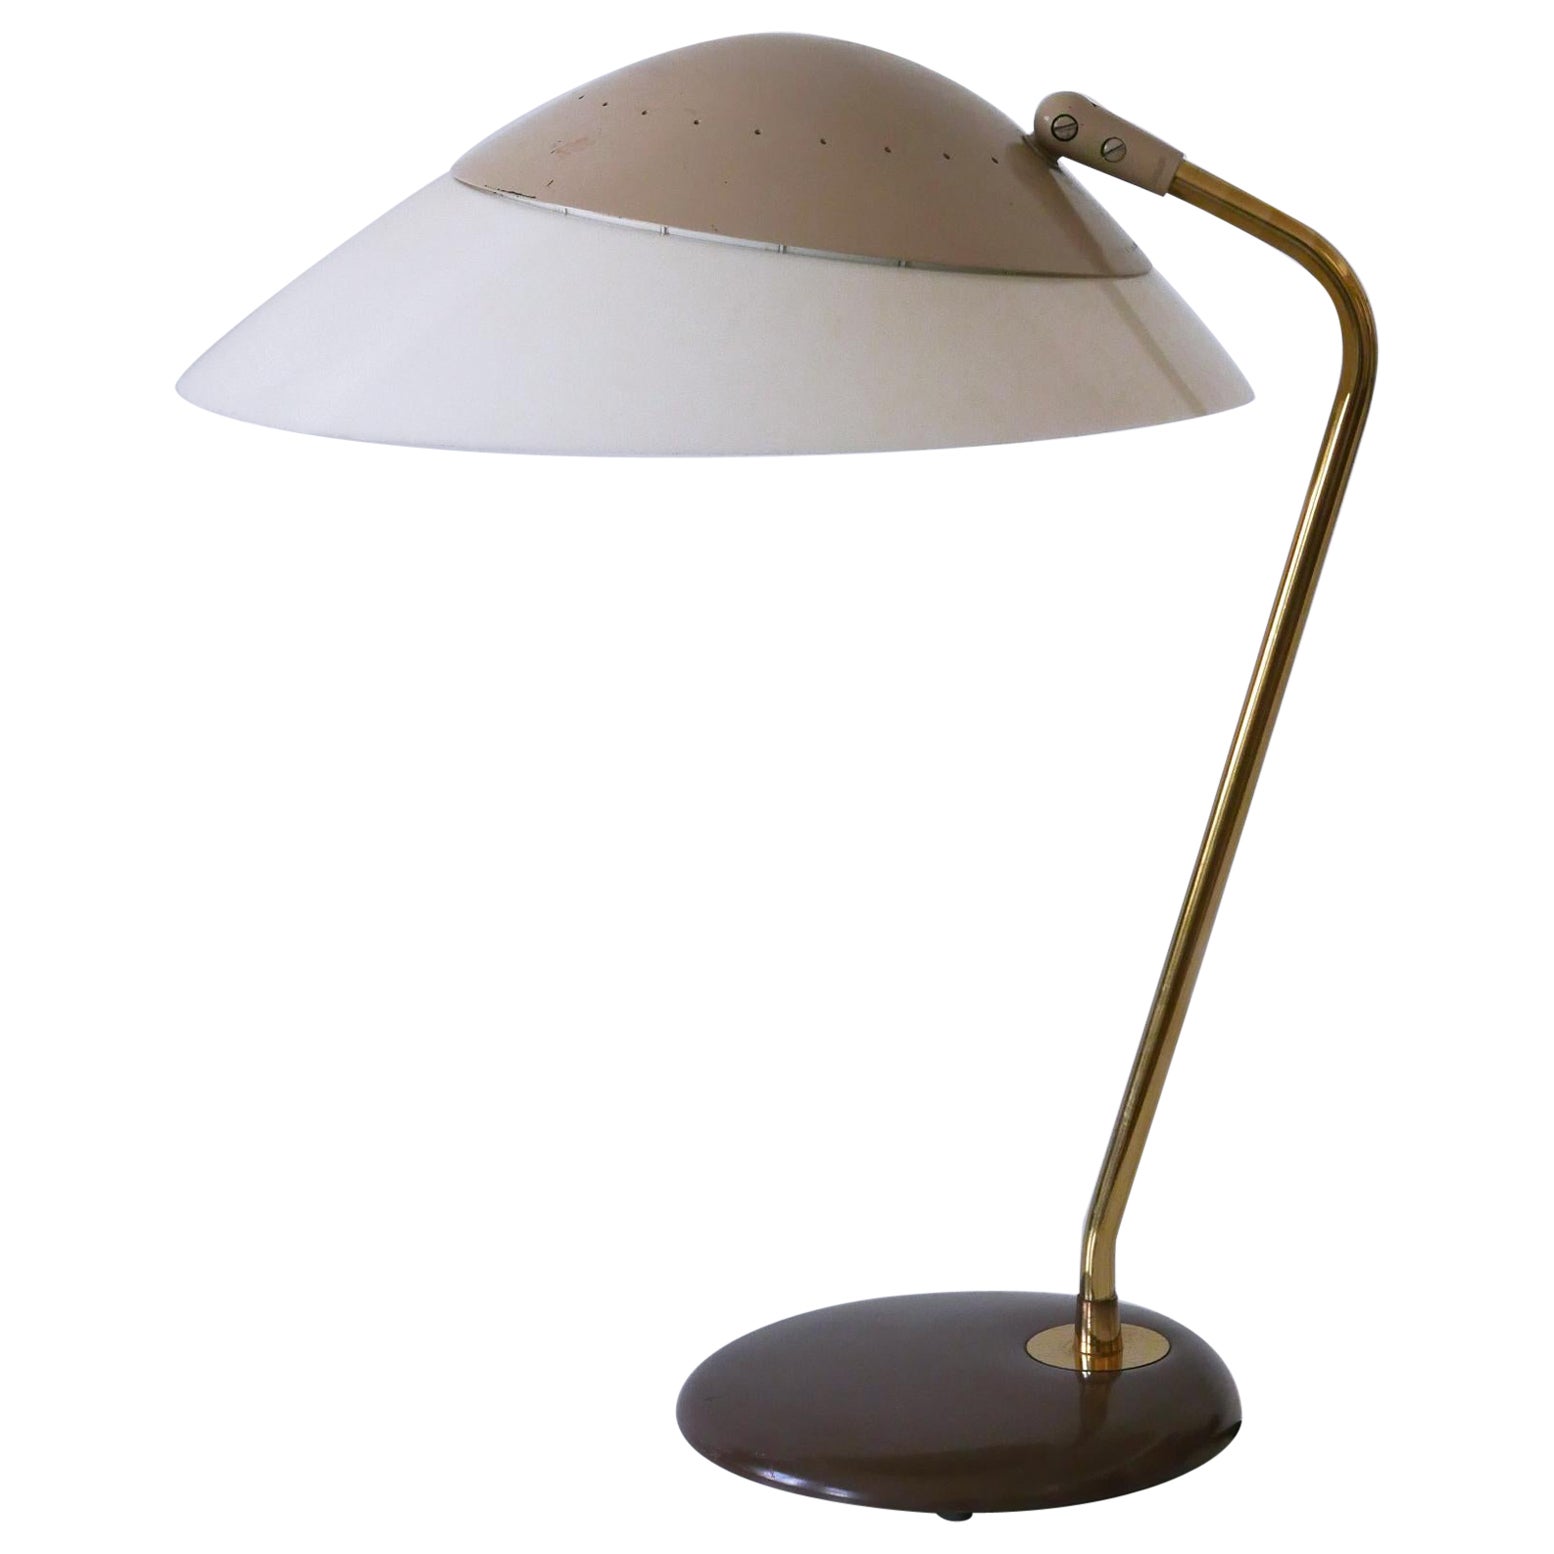 Elegant Table Lamp or Desk Light by Gerald Thurston for Lightolier USA 1950s For Sale